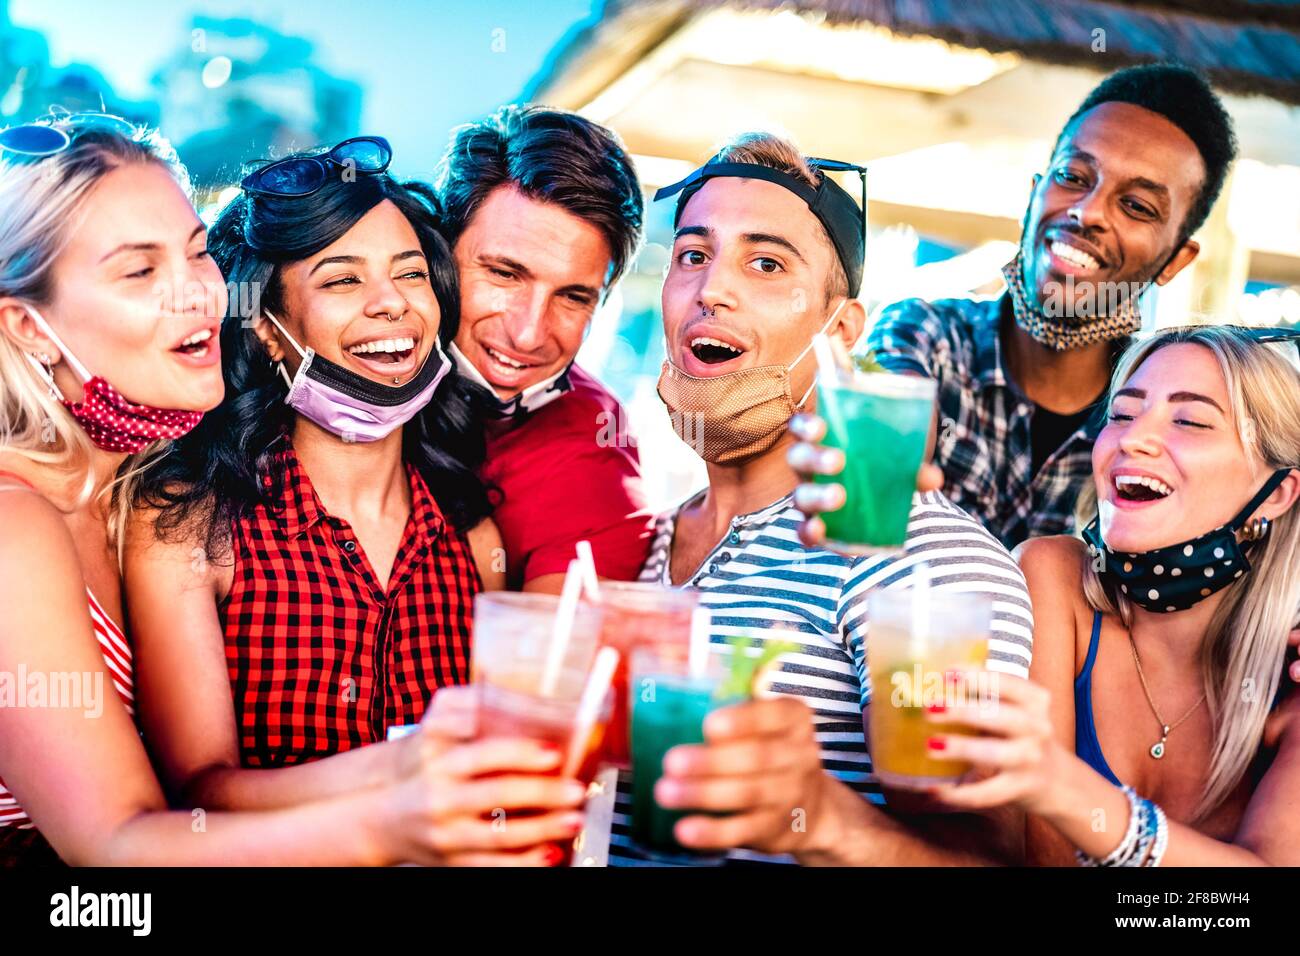 Les gens sont heureux et multiculturels et se font dorlocher au bar ouvert Masques - Nouveau concept de style de vie normal avec des amis milenial s'amuser ensemble Banque D'Images